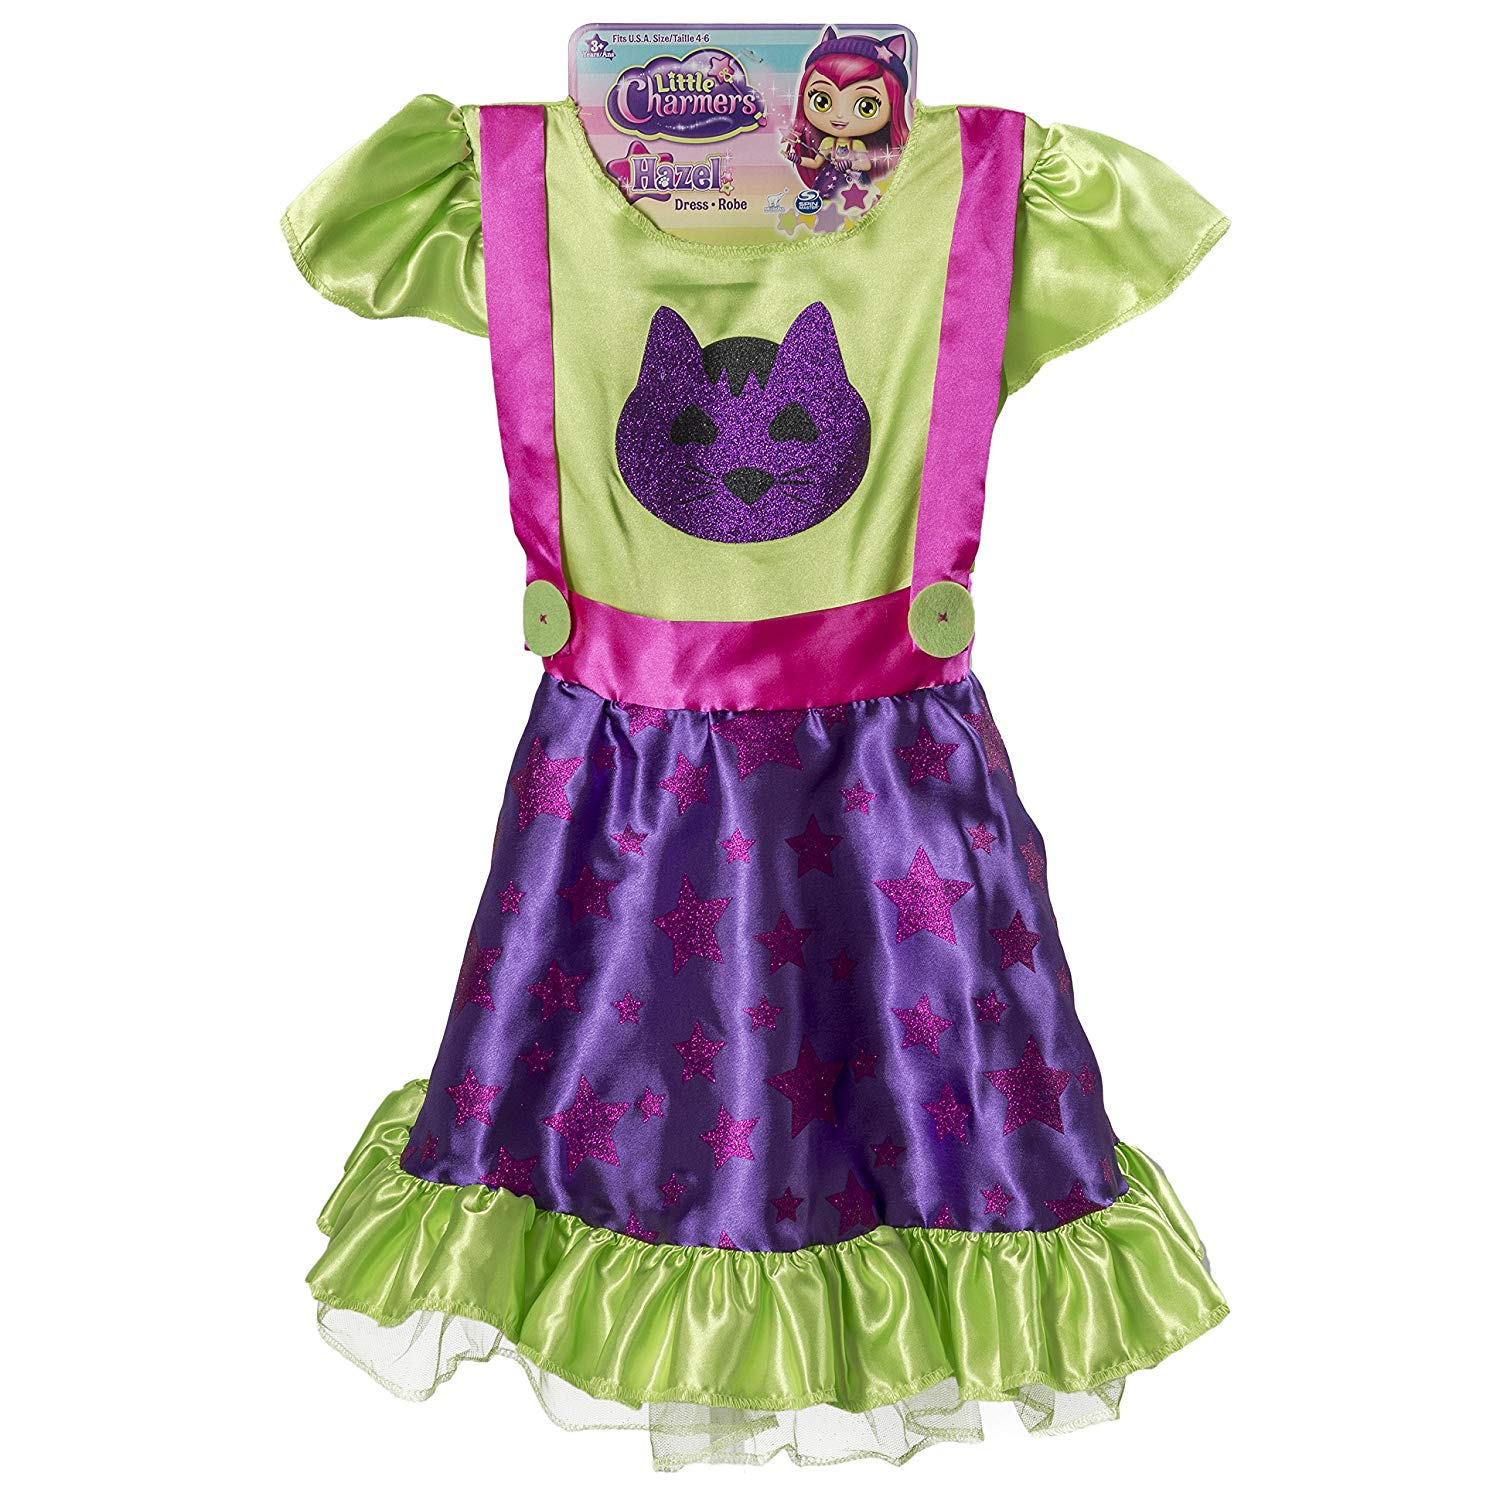 Little Charmers Hazel’s Dress Only $6.20!